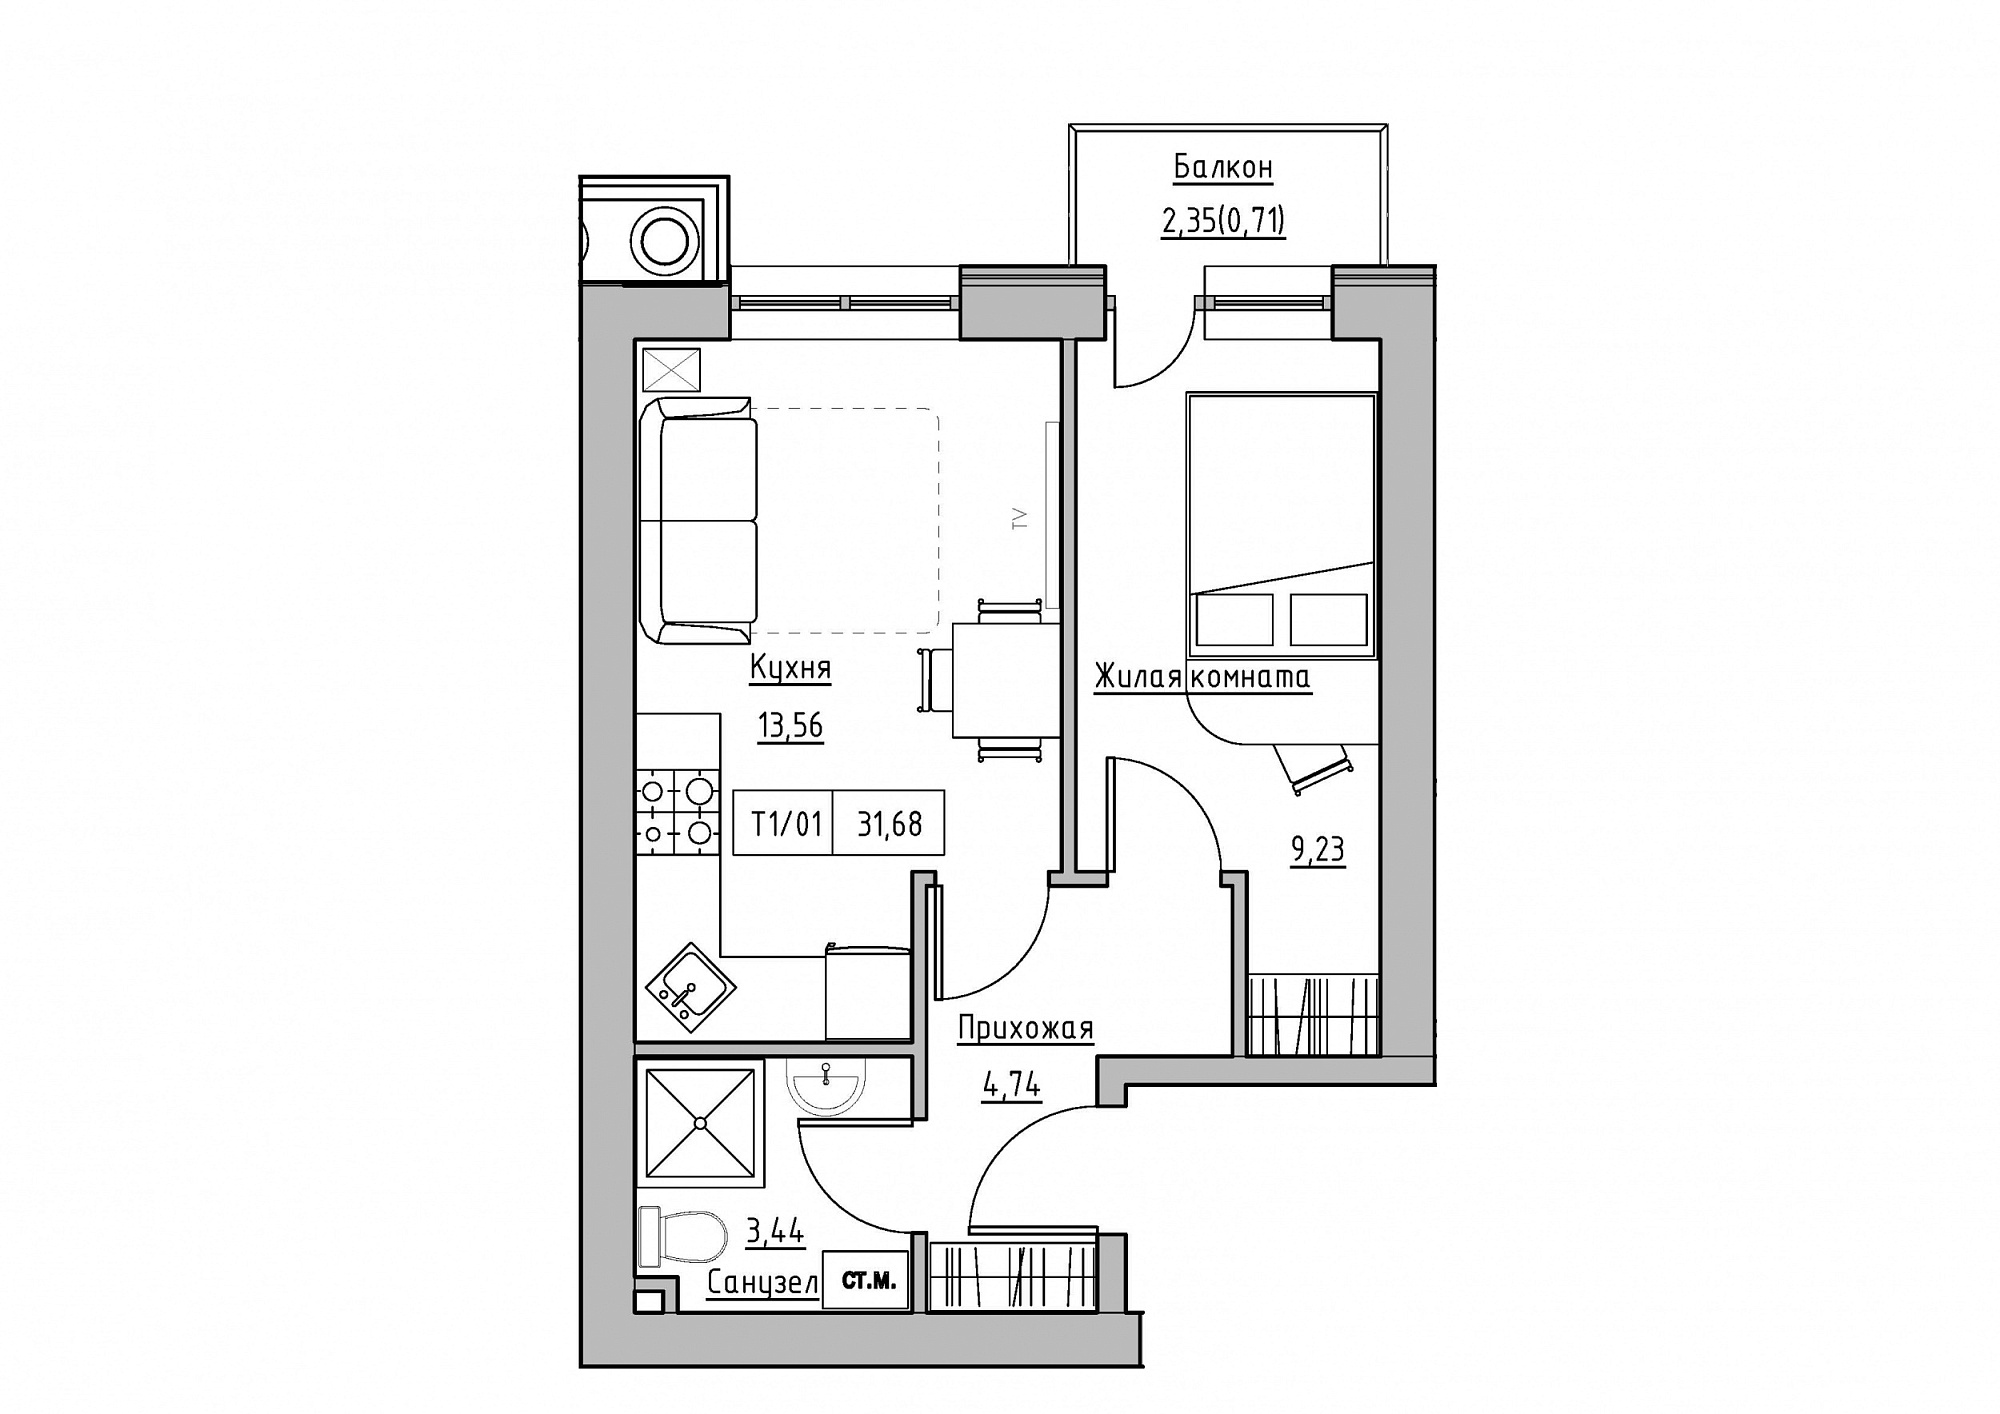 Планировка 1-к квартира площей 31.68м2, KS-011-05/0016.